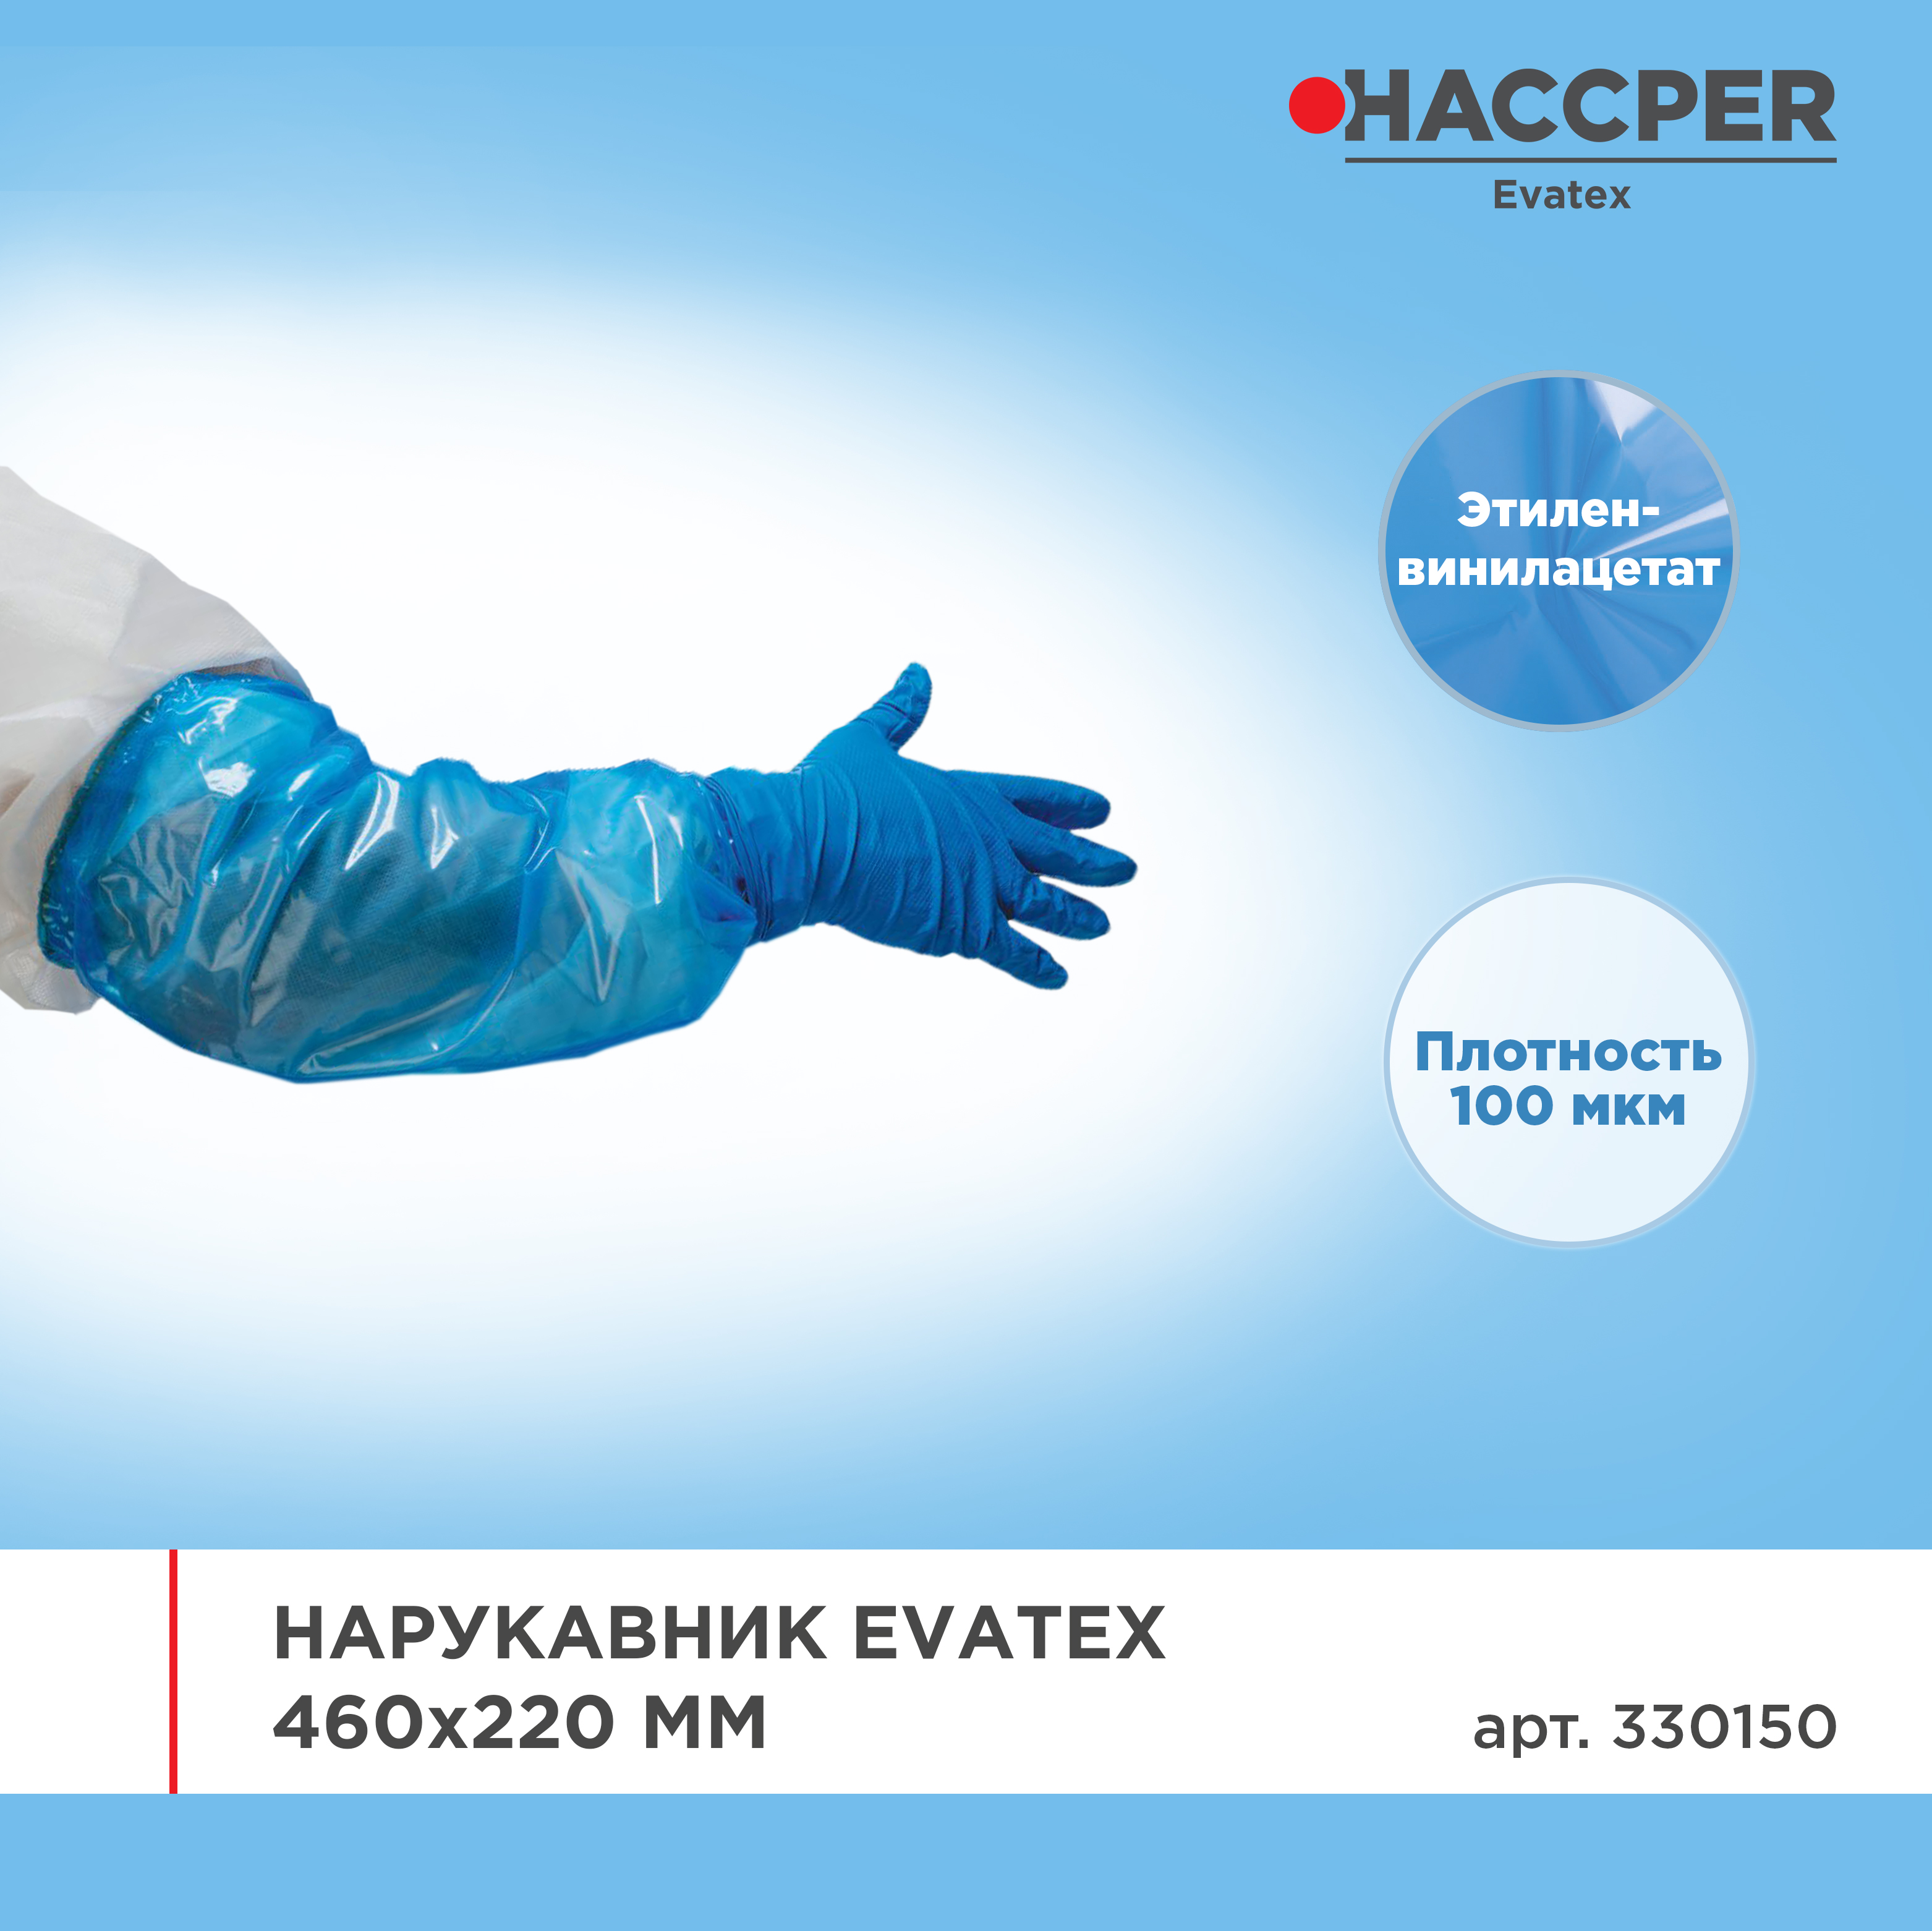 Нарукавник HACCPER Evatex 460х220 мм, 100 мкм, синий